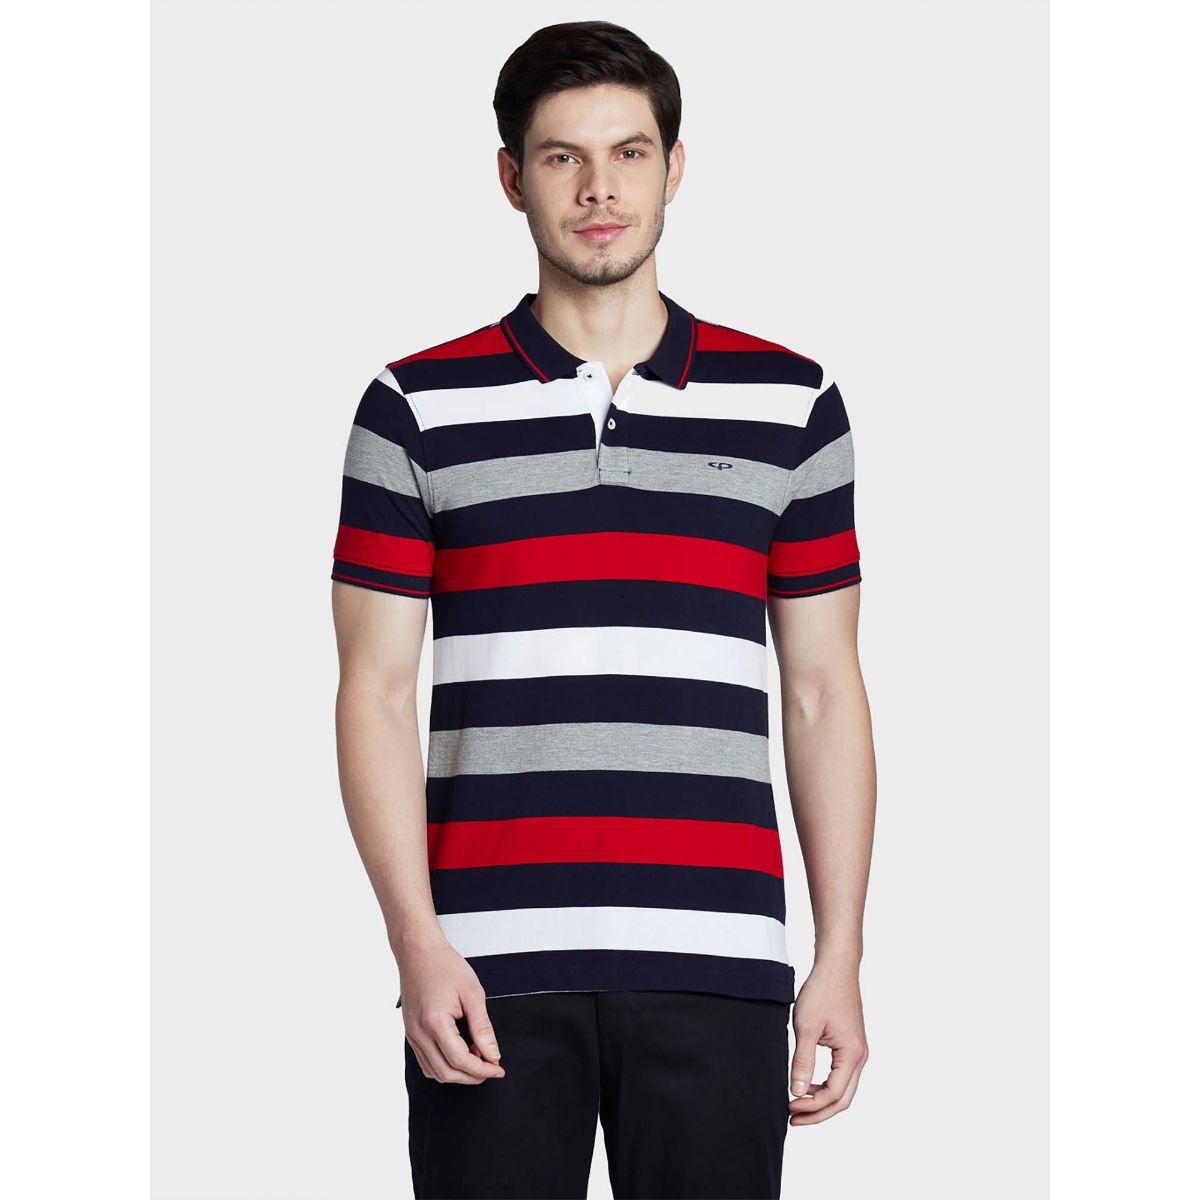 ColorPlus Multi-Color Striped T-Shirt (M)